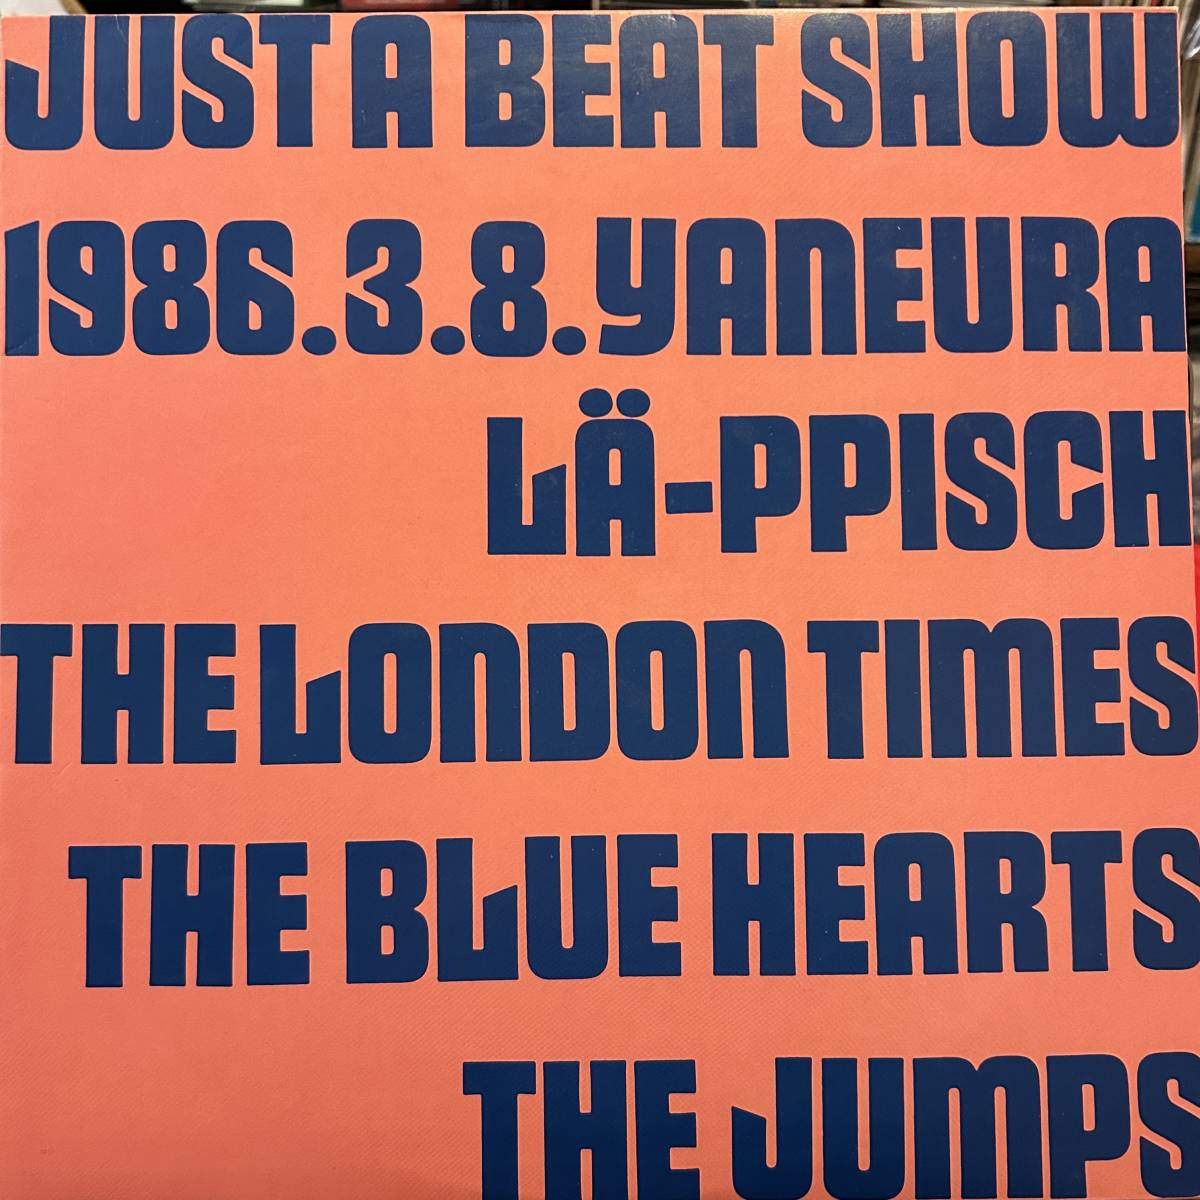 即決 送料込 ポスター付! Just A Beat Show The Blue Hearts(ブルーハーツ) LA-PPISCH(レピッシュ) London Times(ロンドンタイムス)_画像1